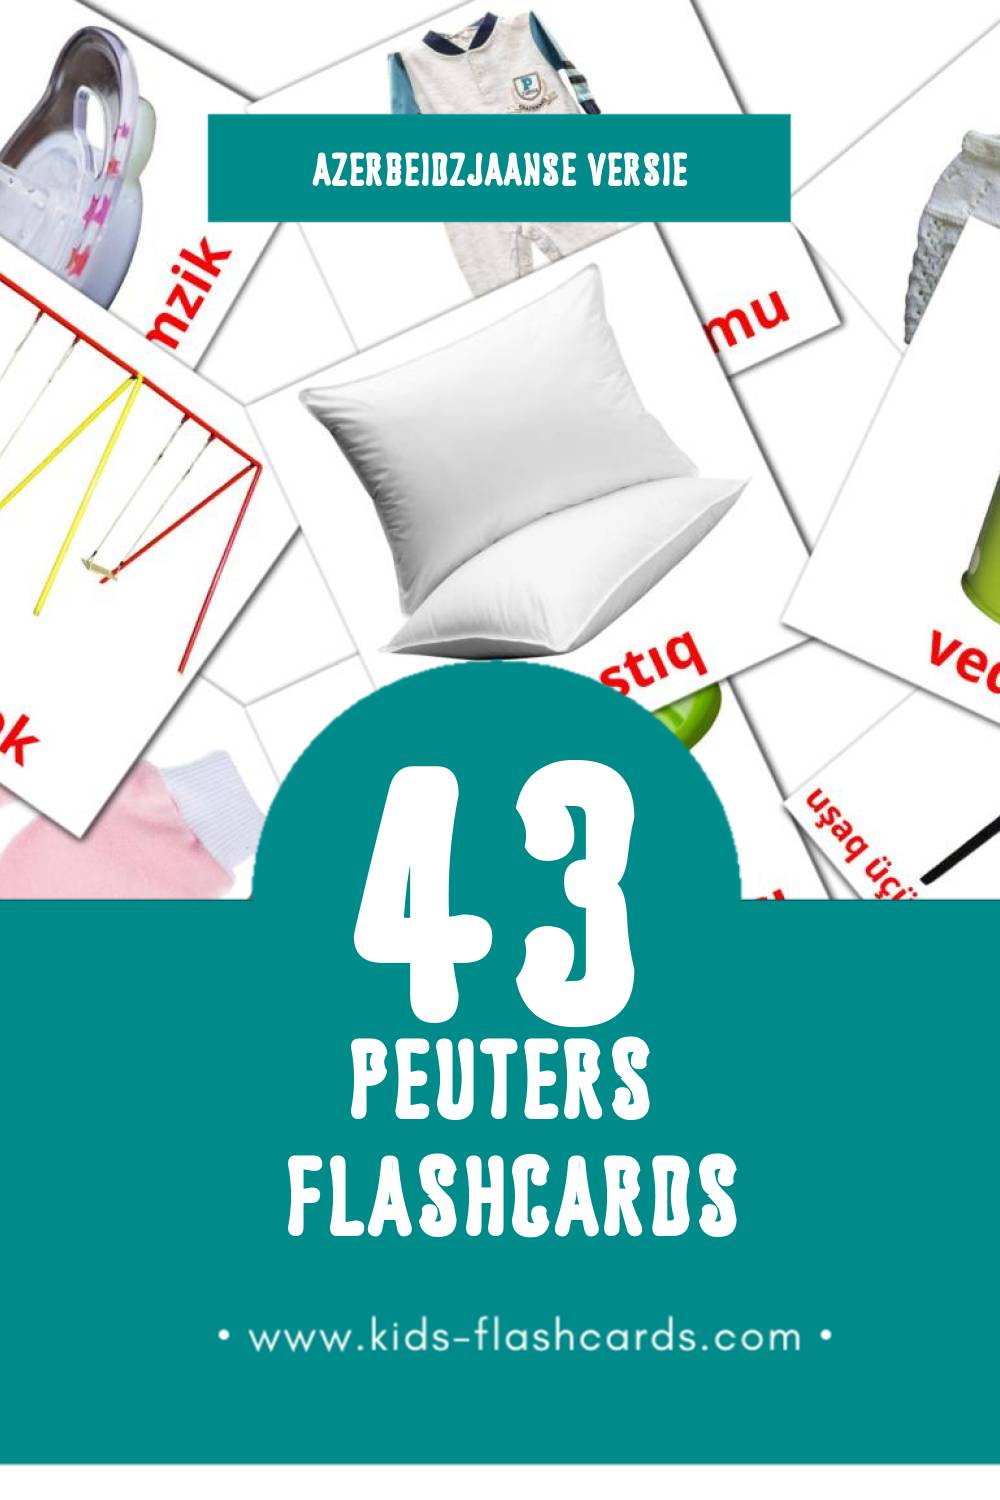 Visuele Körpə Flashcards voor Kleuters (43 kaarten in het Azerbeidzjaans)